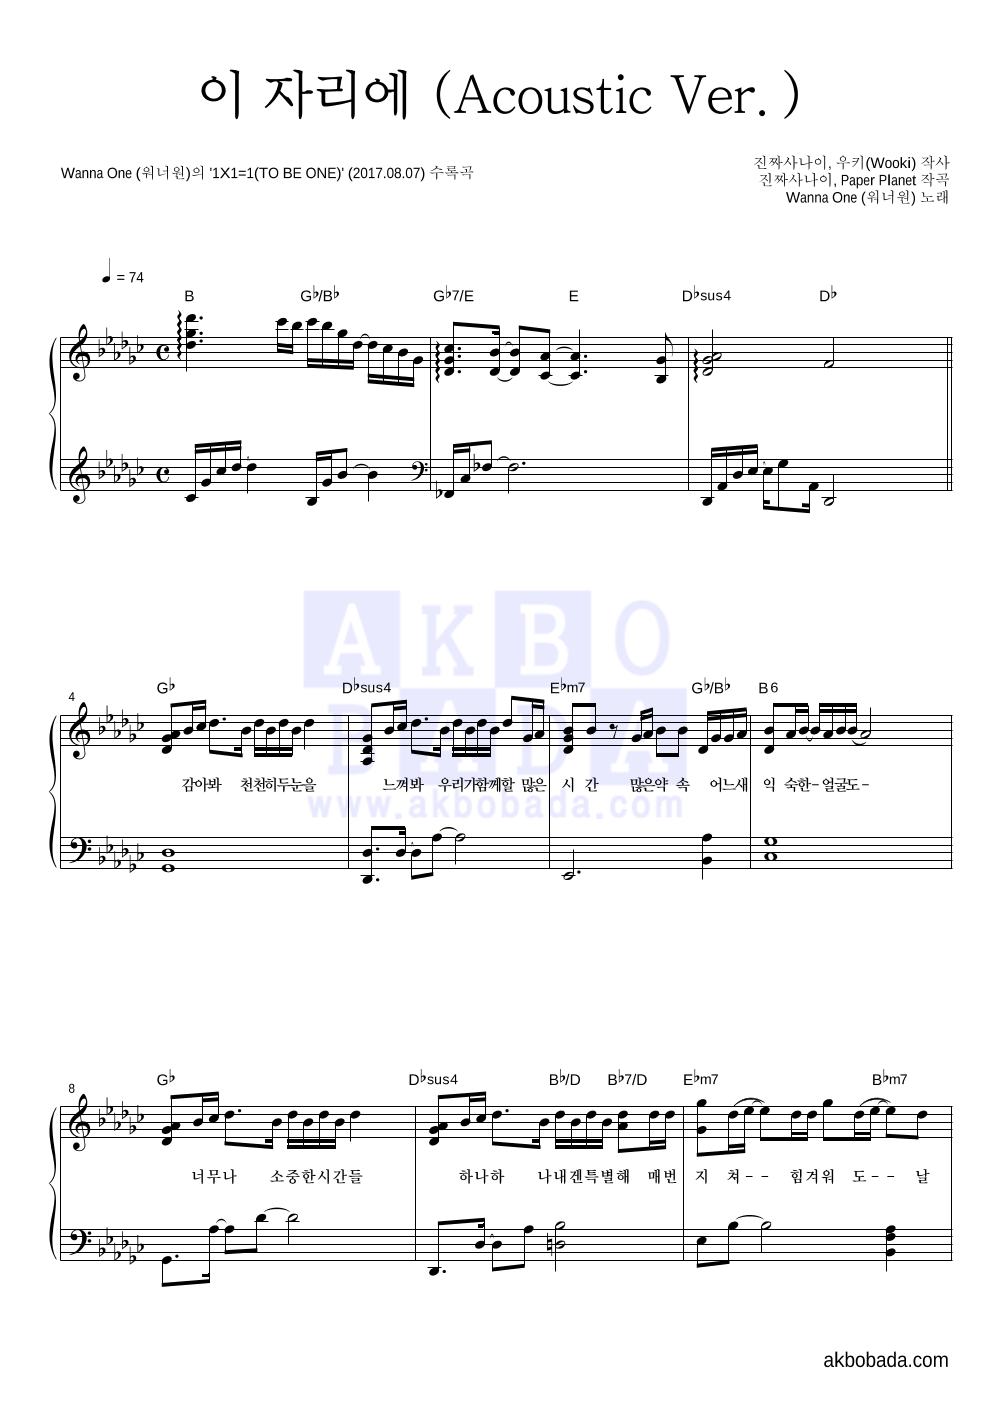 워너원 - 이 자리에 (Acoustic Ver.) 피아노 2단 악보 